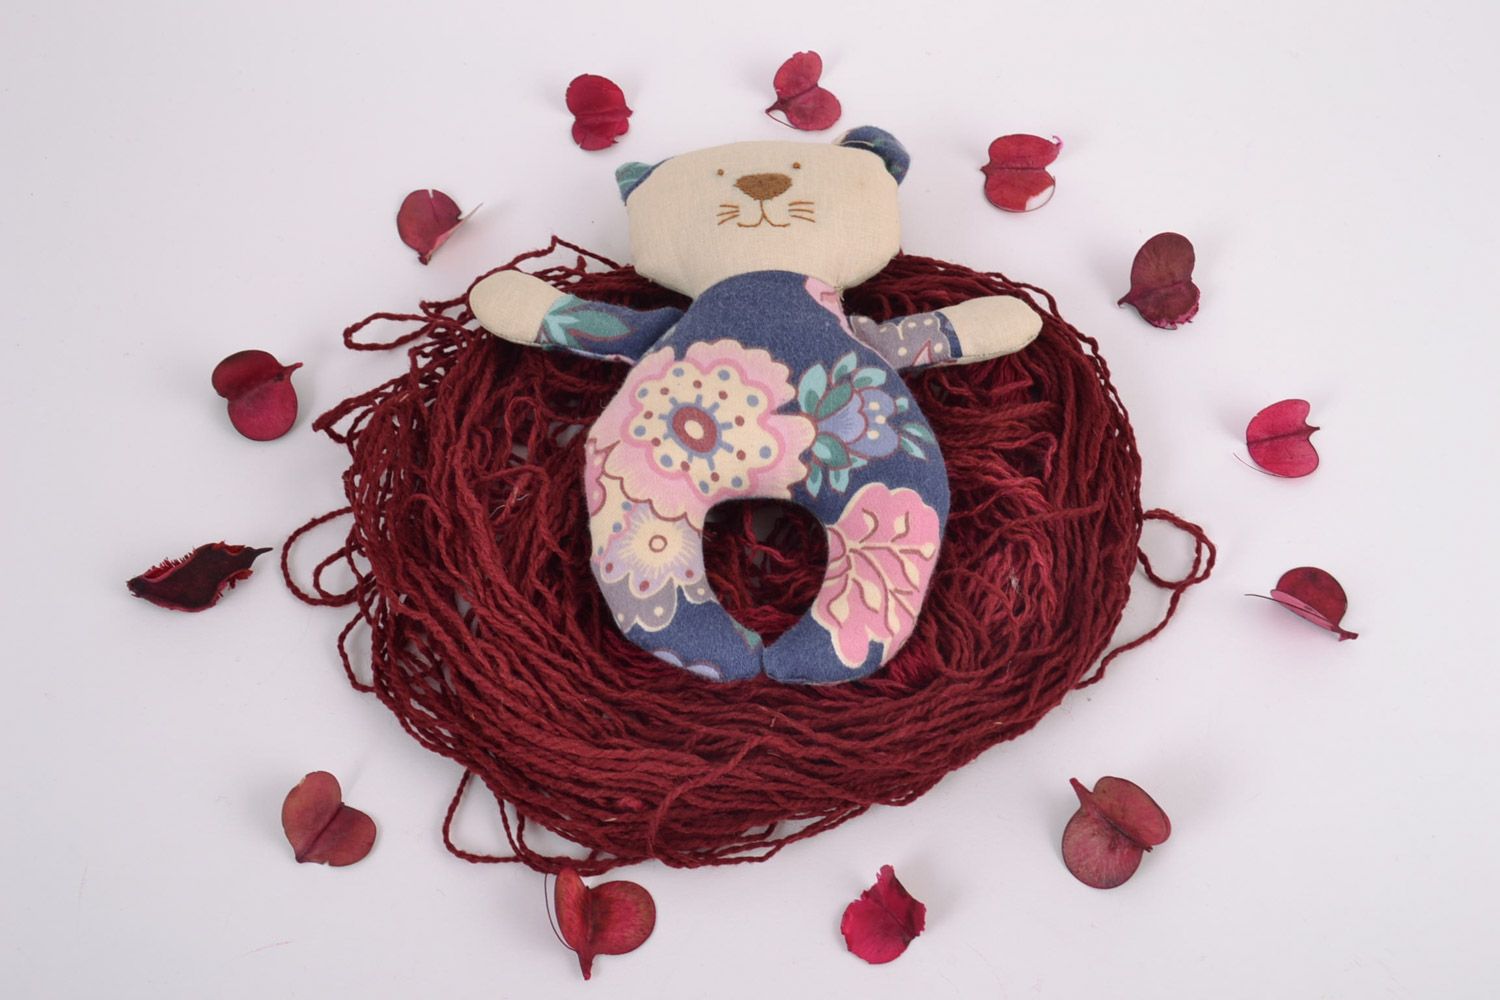 Textil Kuscheltier Kater blumig aus Baumwolle schön handmade Spielzeug für Kinder foto 1